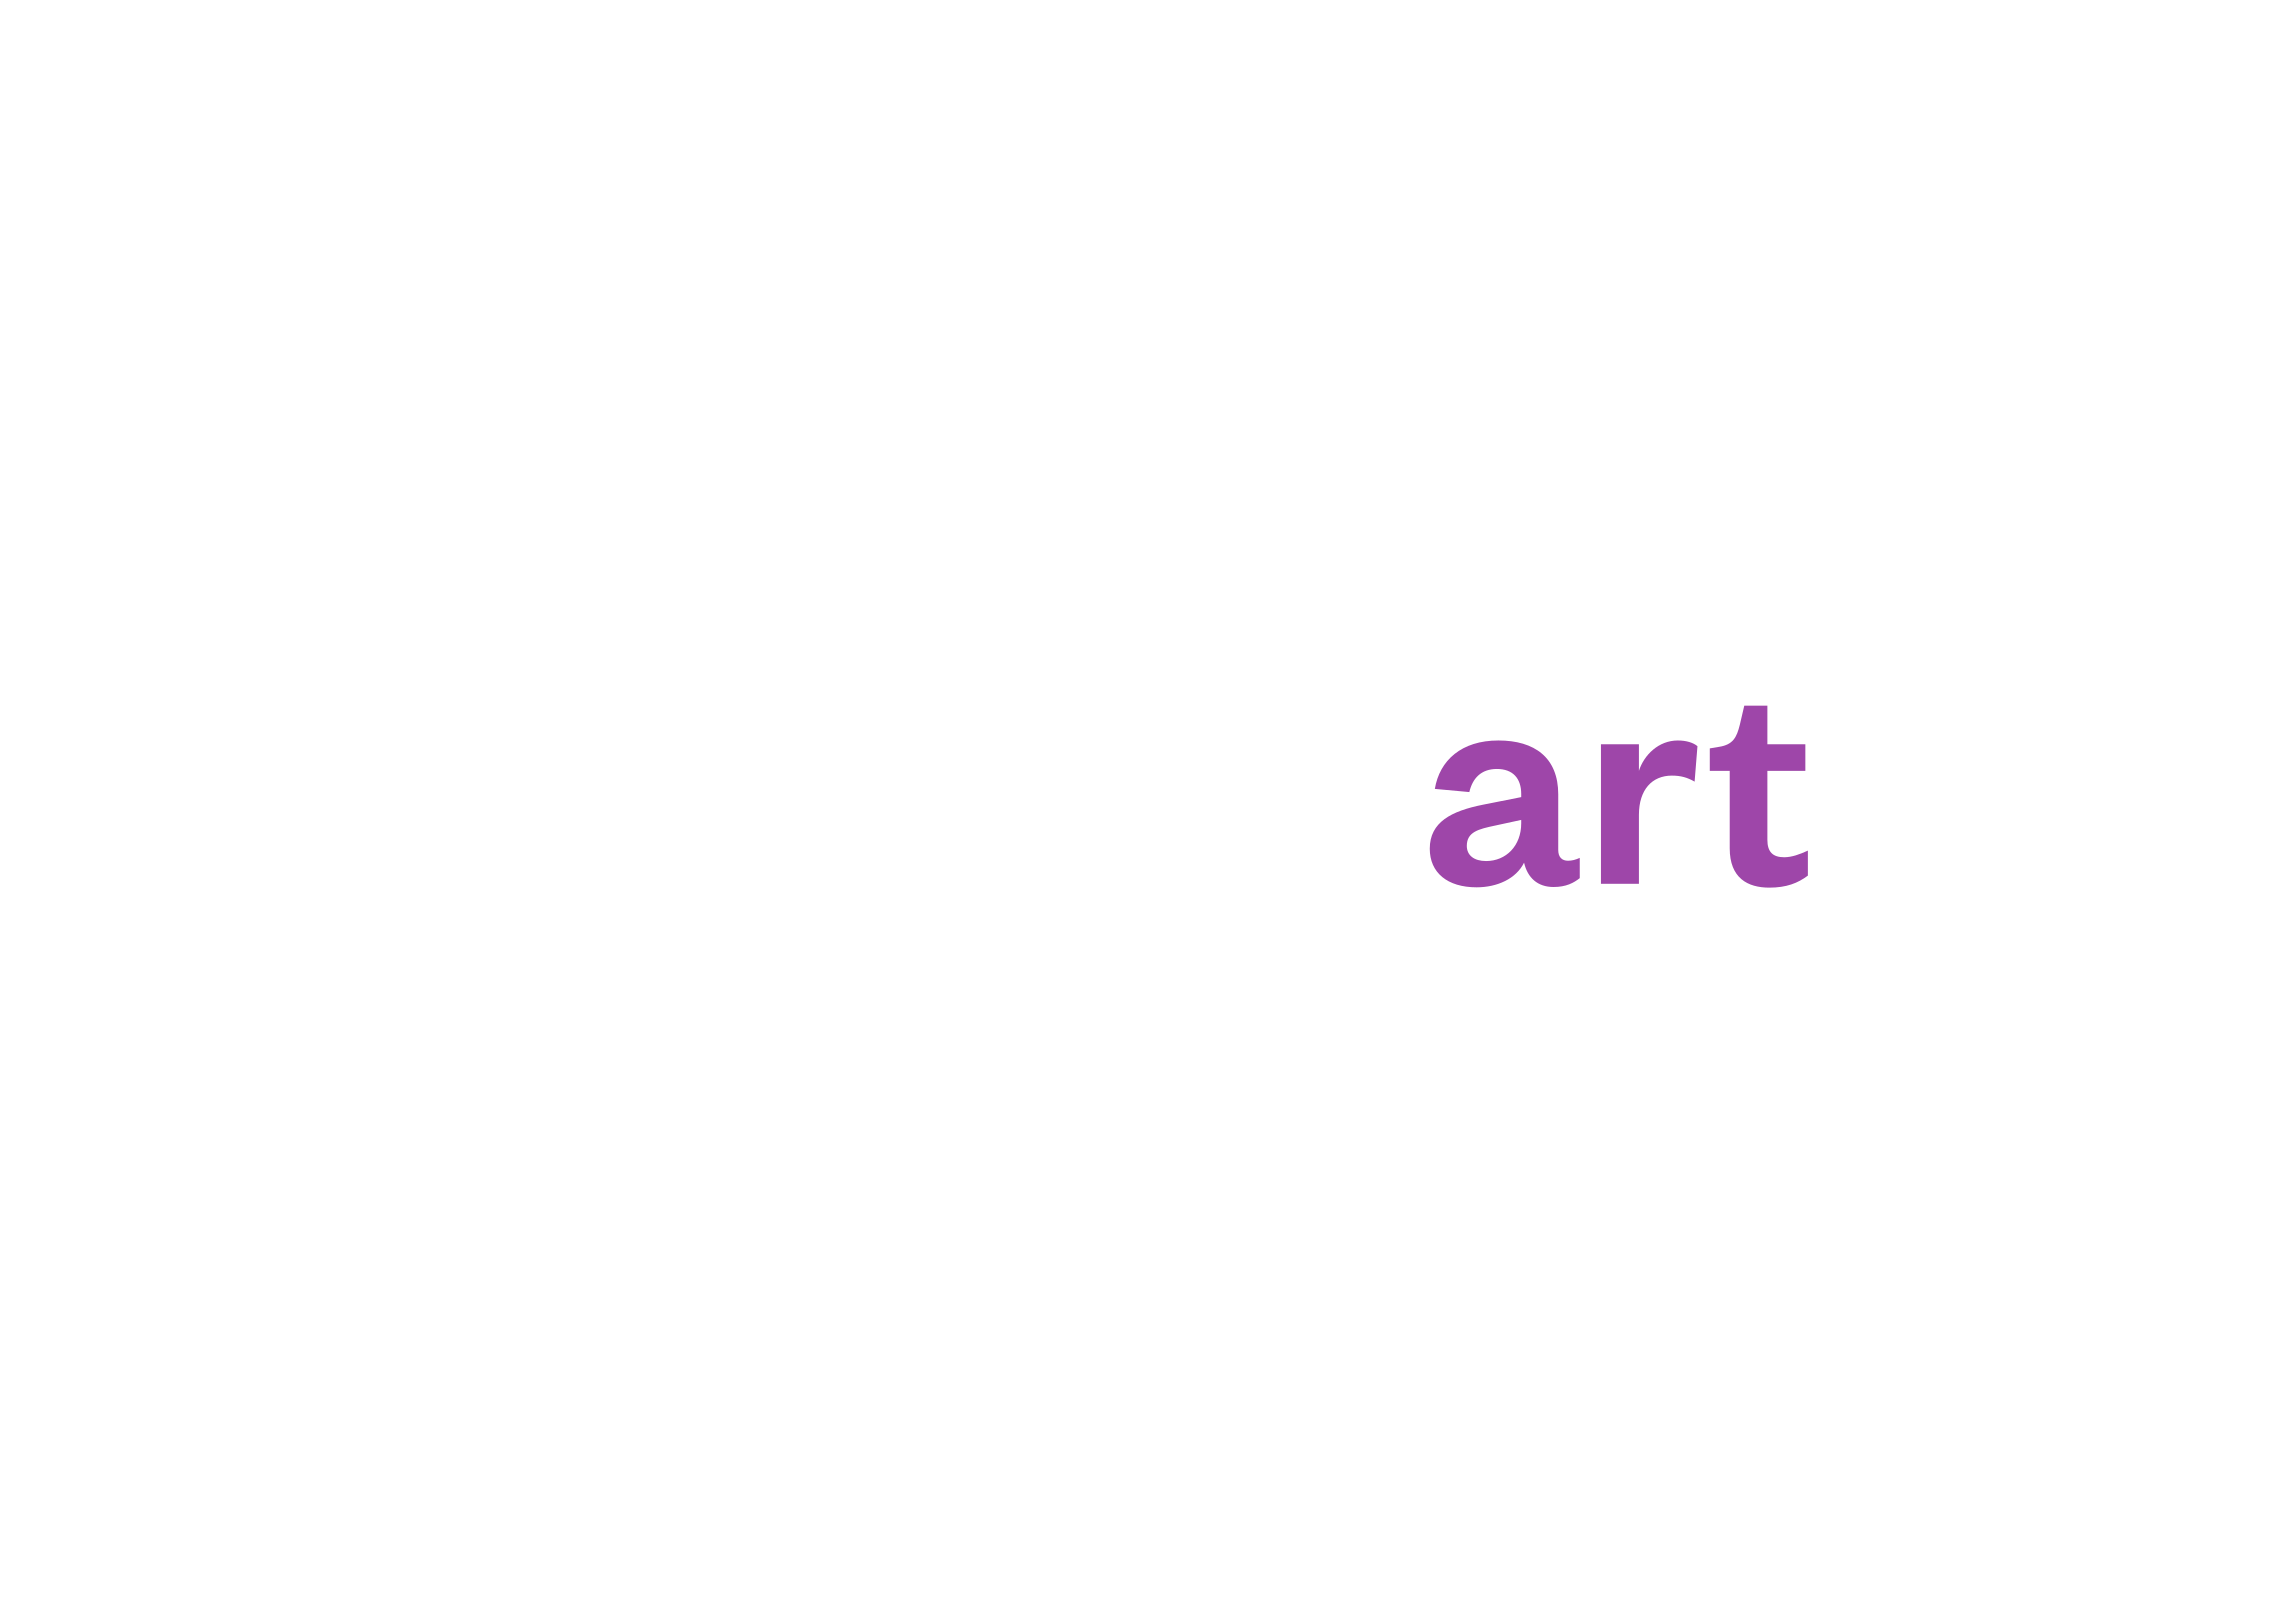 bad ragartz logo